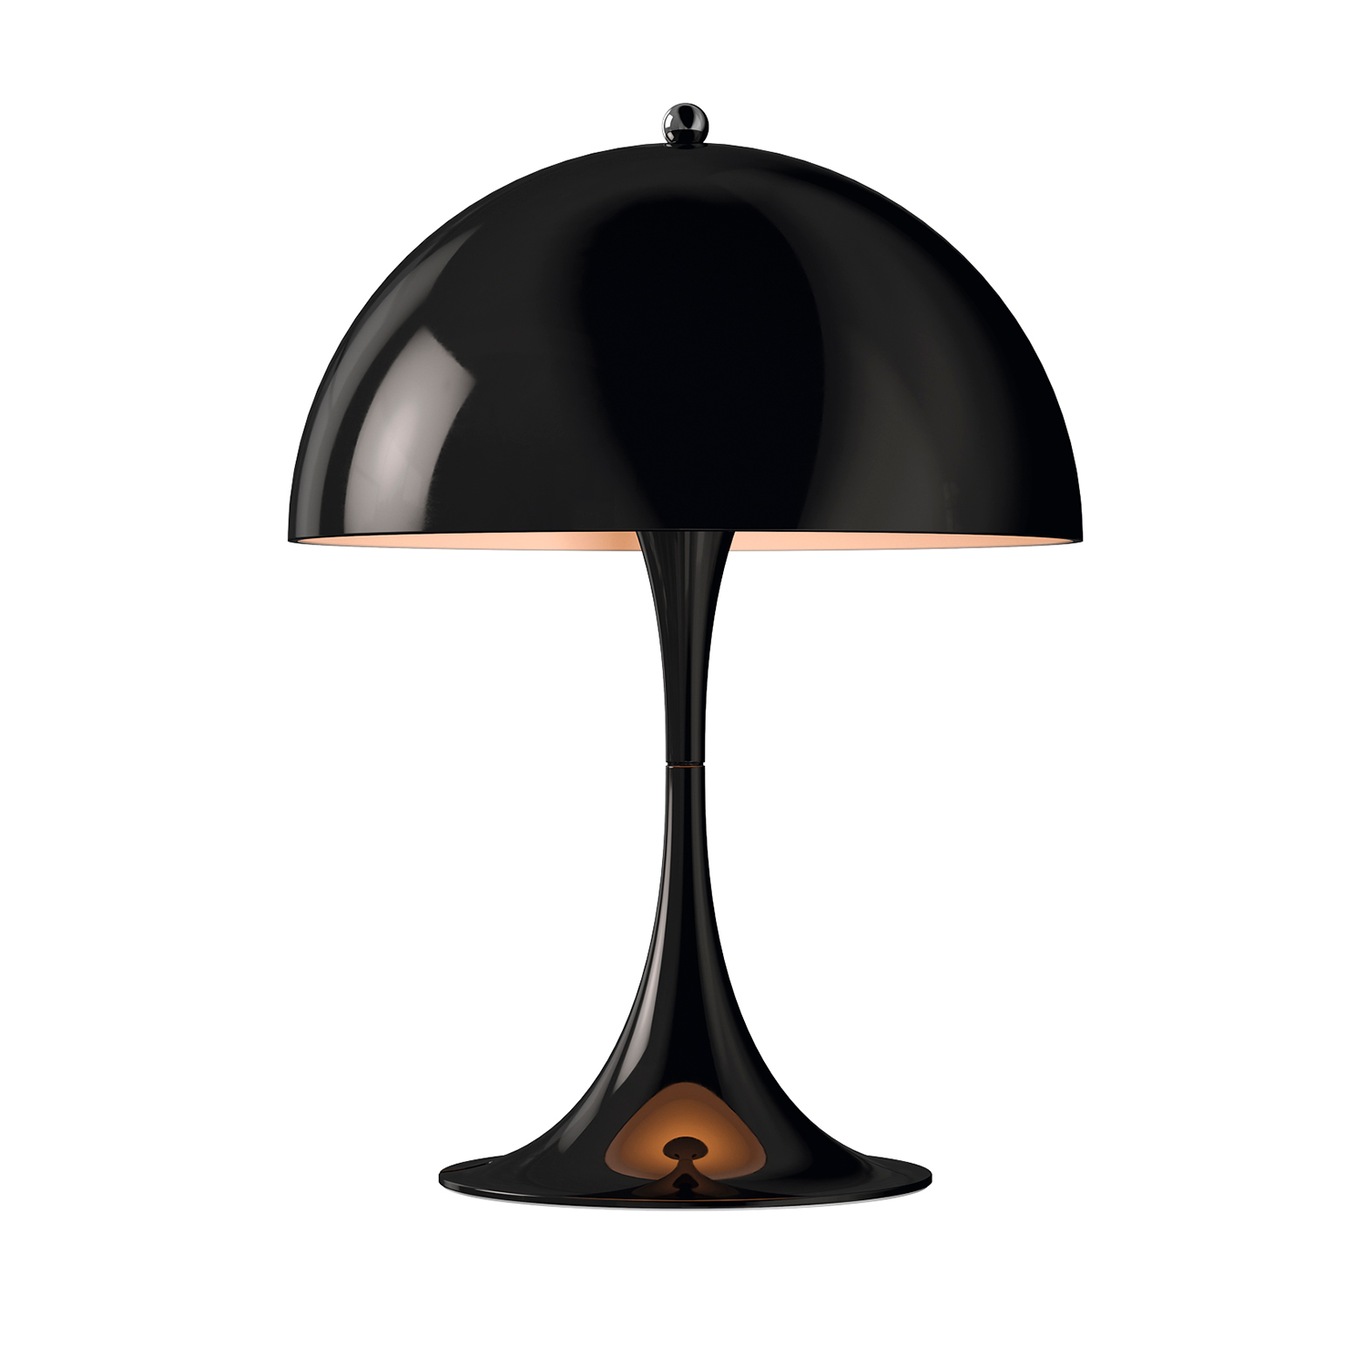 Panthella 250 Table Lamp, Black